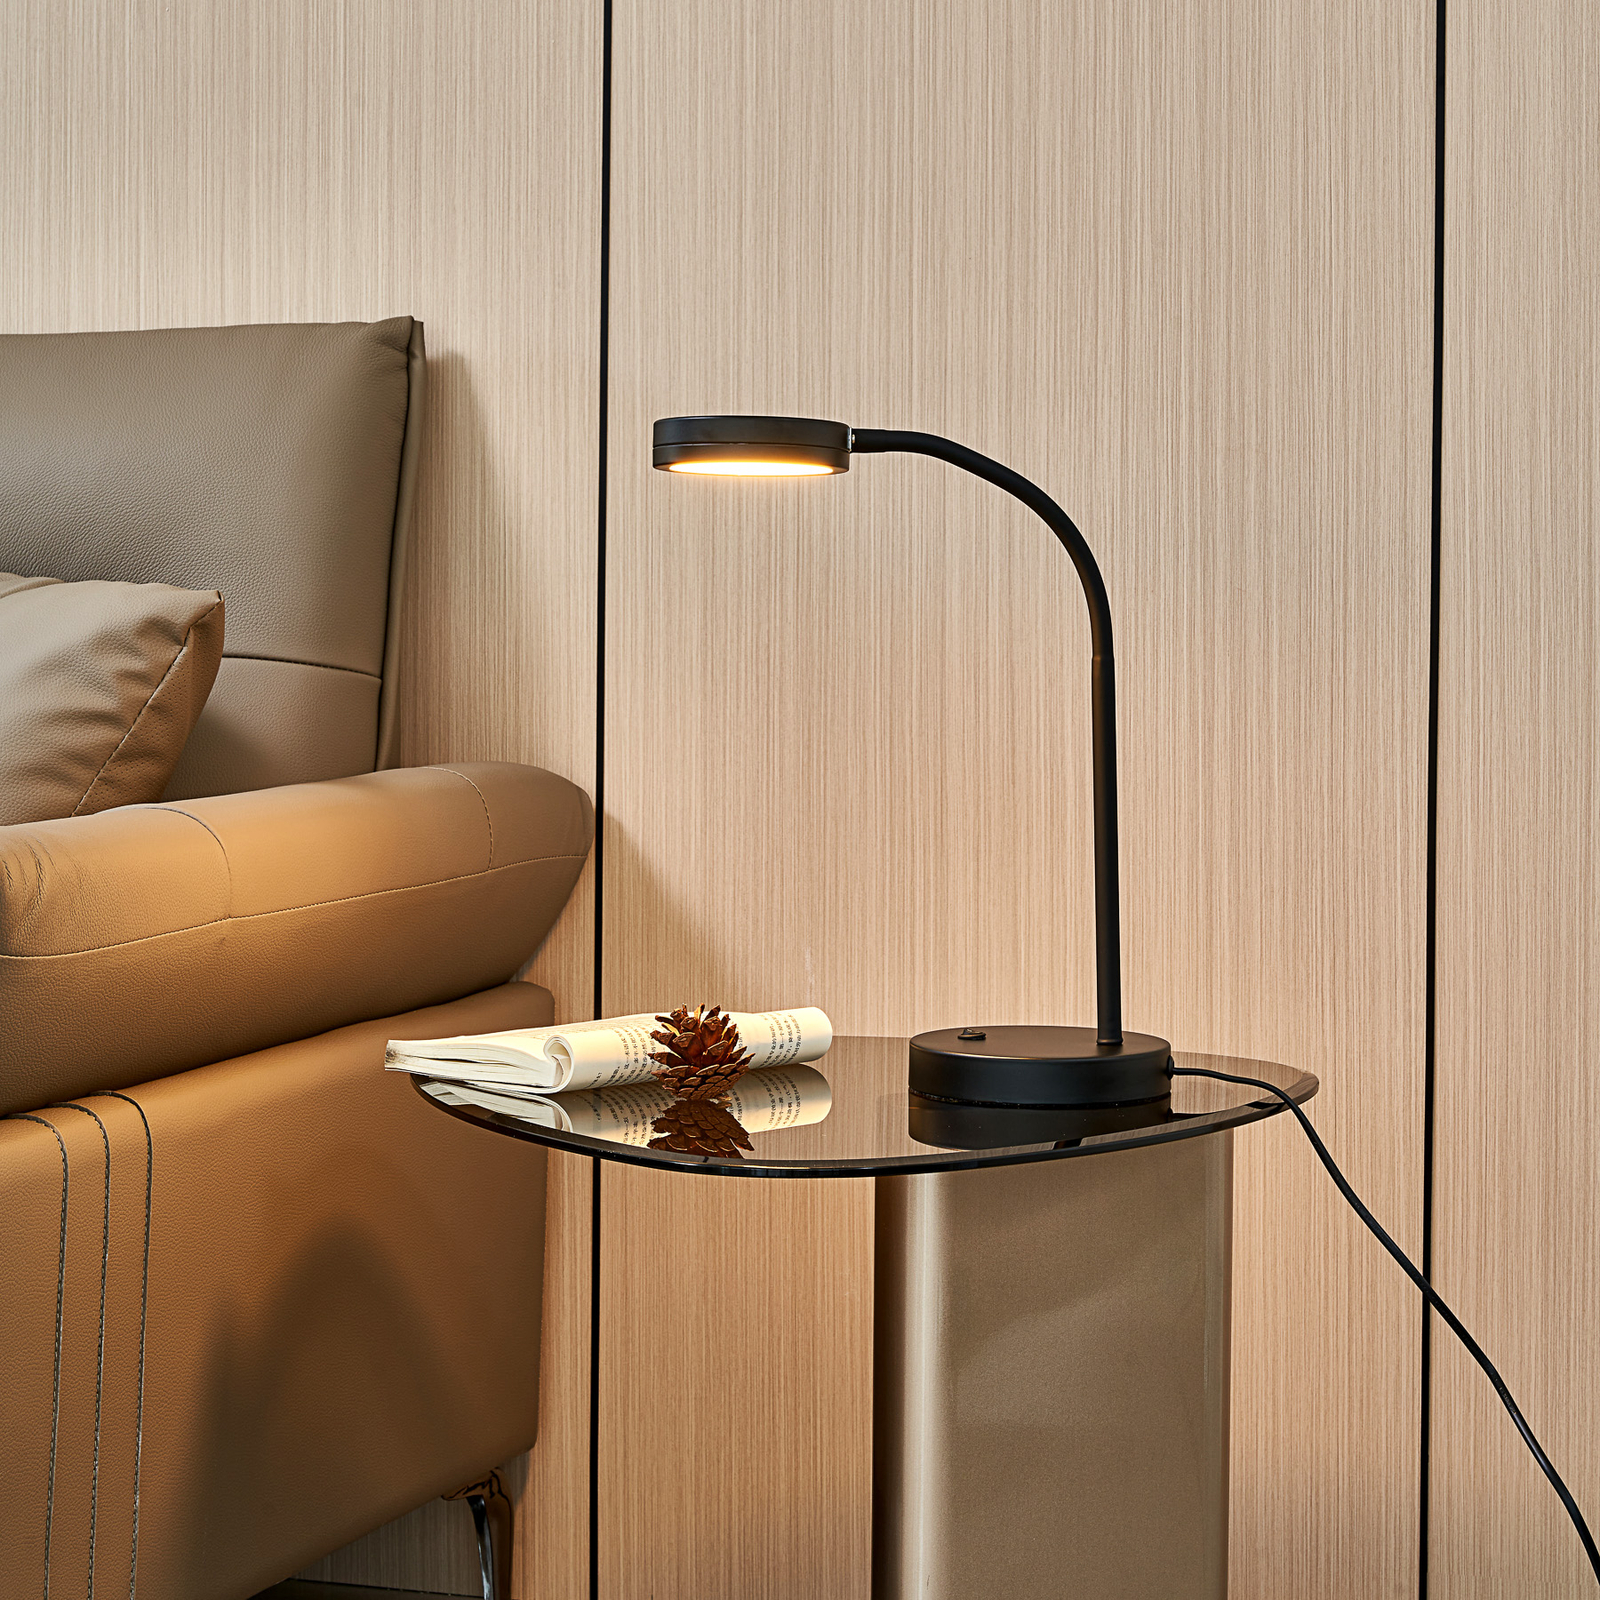 Lindby Toulin lampada LED da tavolo, flex, nero